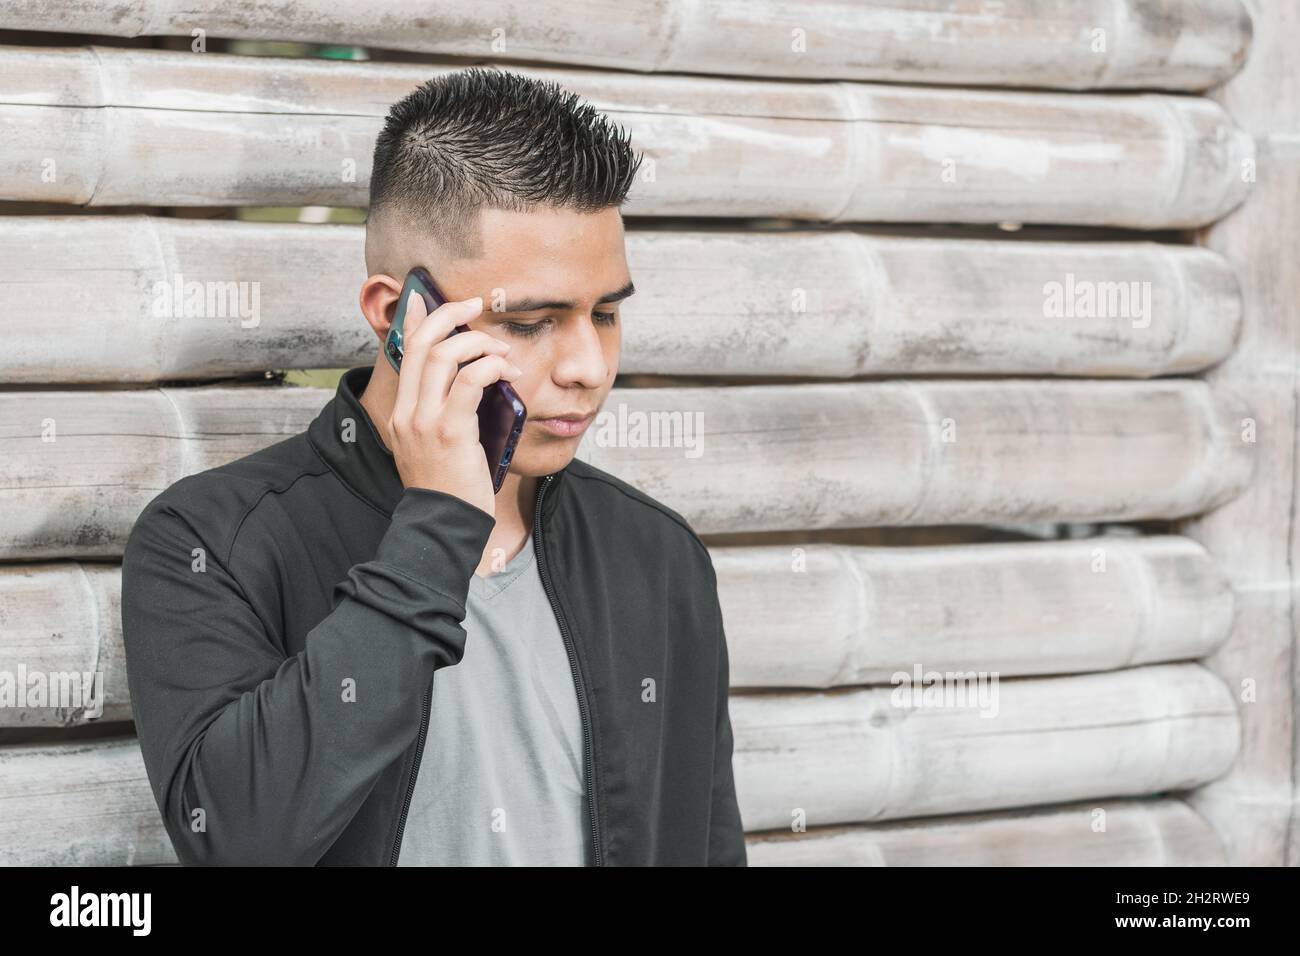 joven estudiante universitario latino hablando en su teléfono celular con una cara seria, apoyándose en una choza guadua, empresario o influencer con su teléfono celular Foto de stock